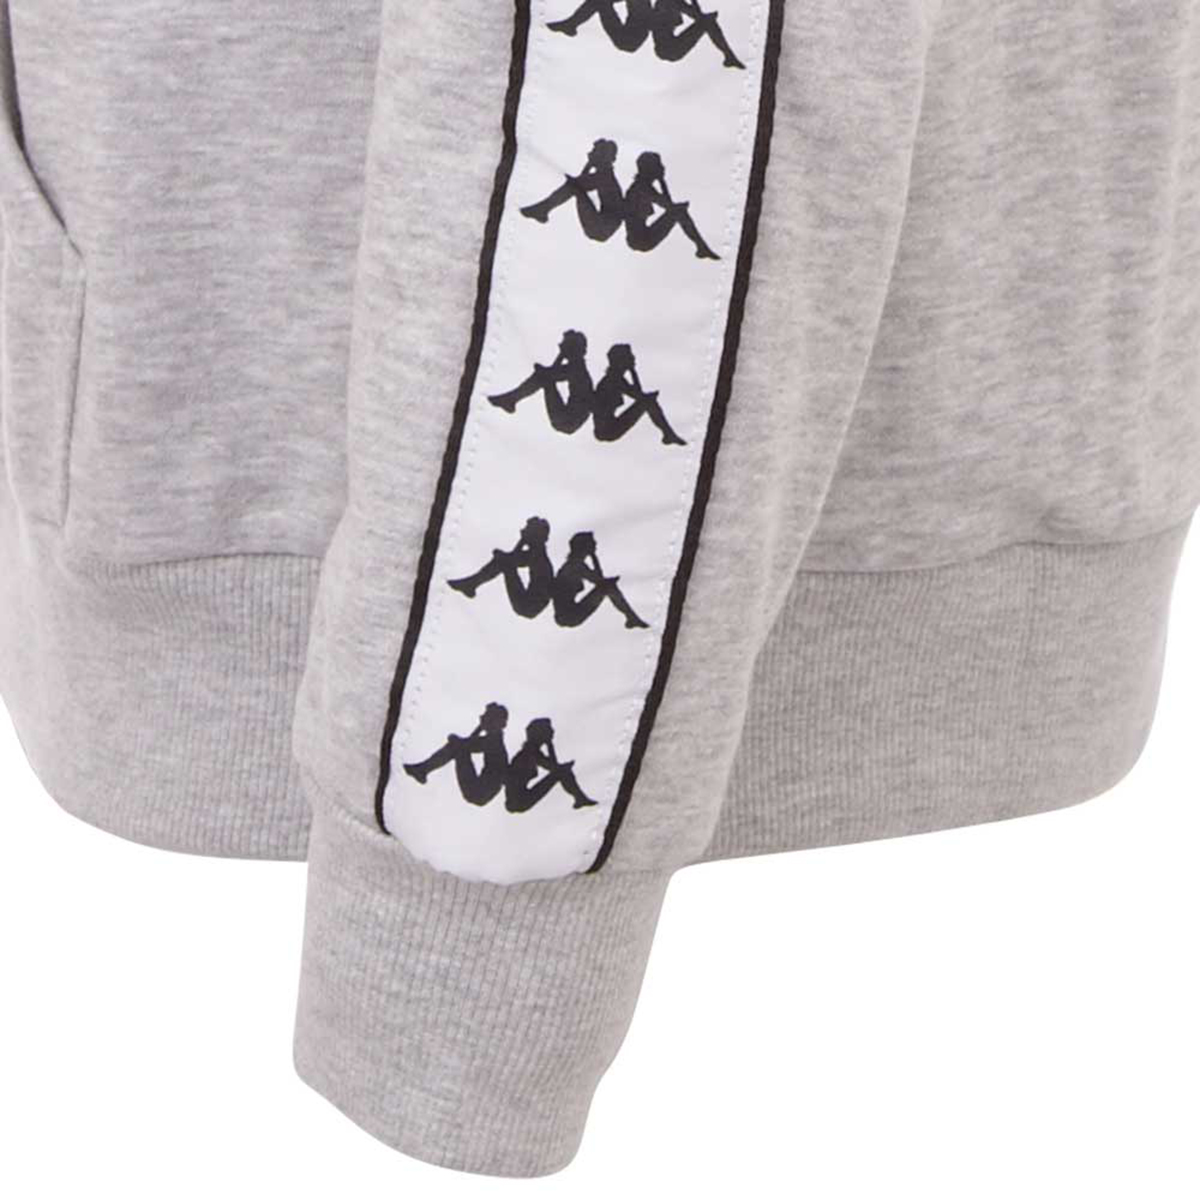 Kappa FINNUS Hooded Sweatshirt Herren grau 306014